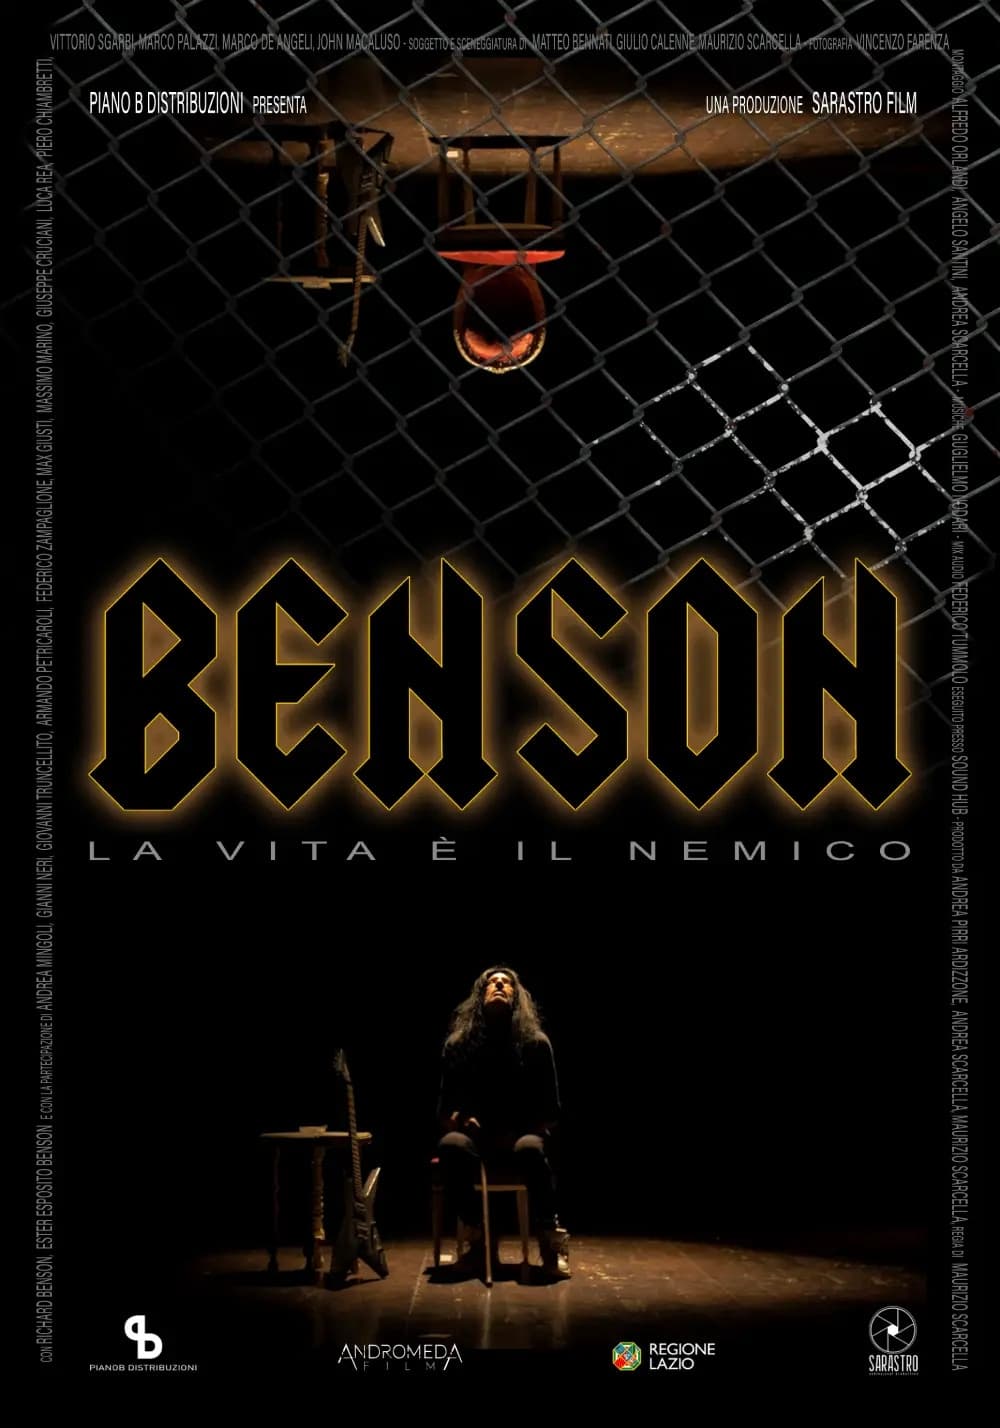 Poster for the movie "Benson - La vita è il nemico"